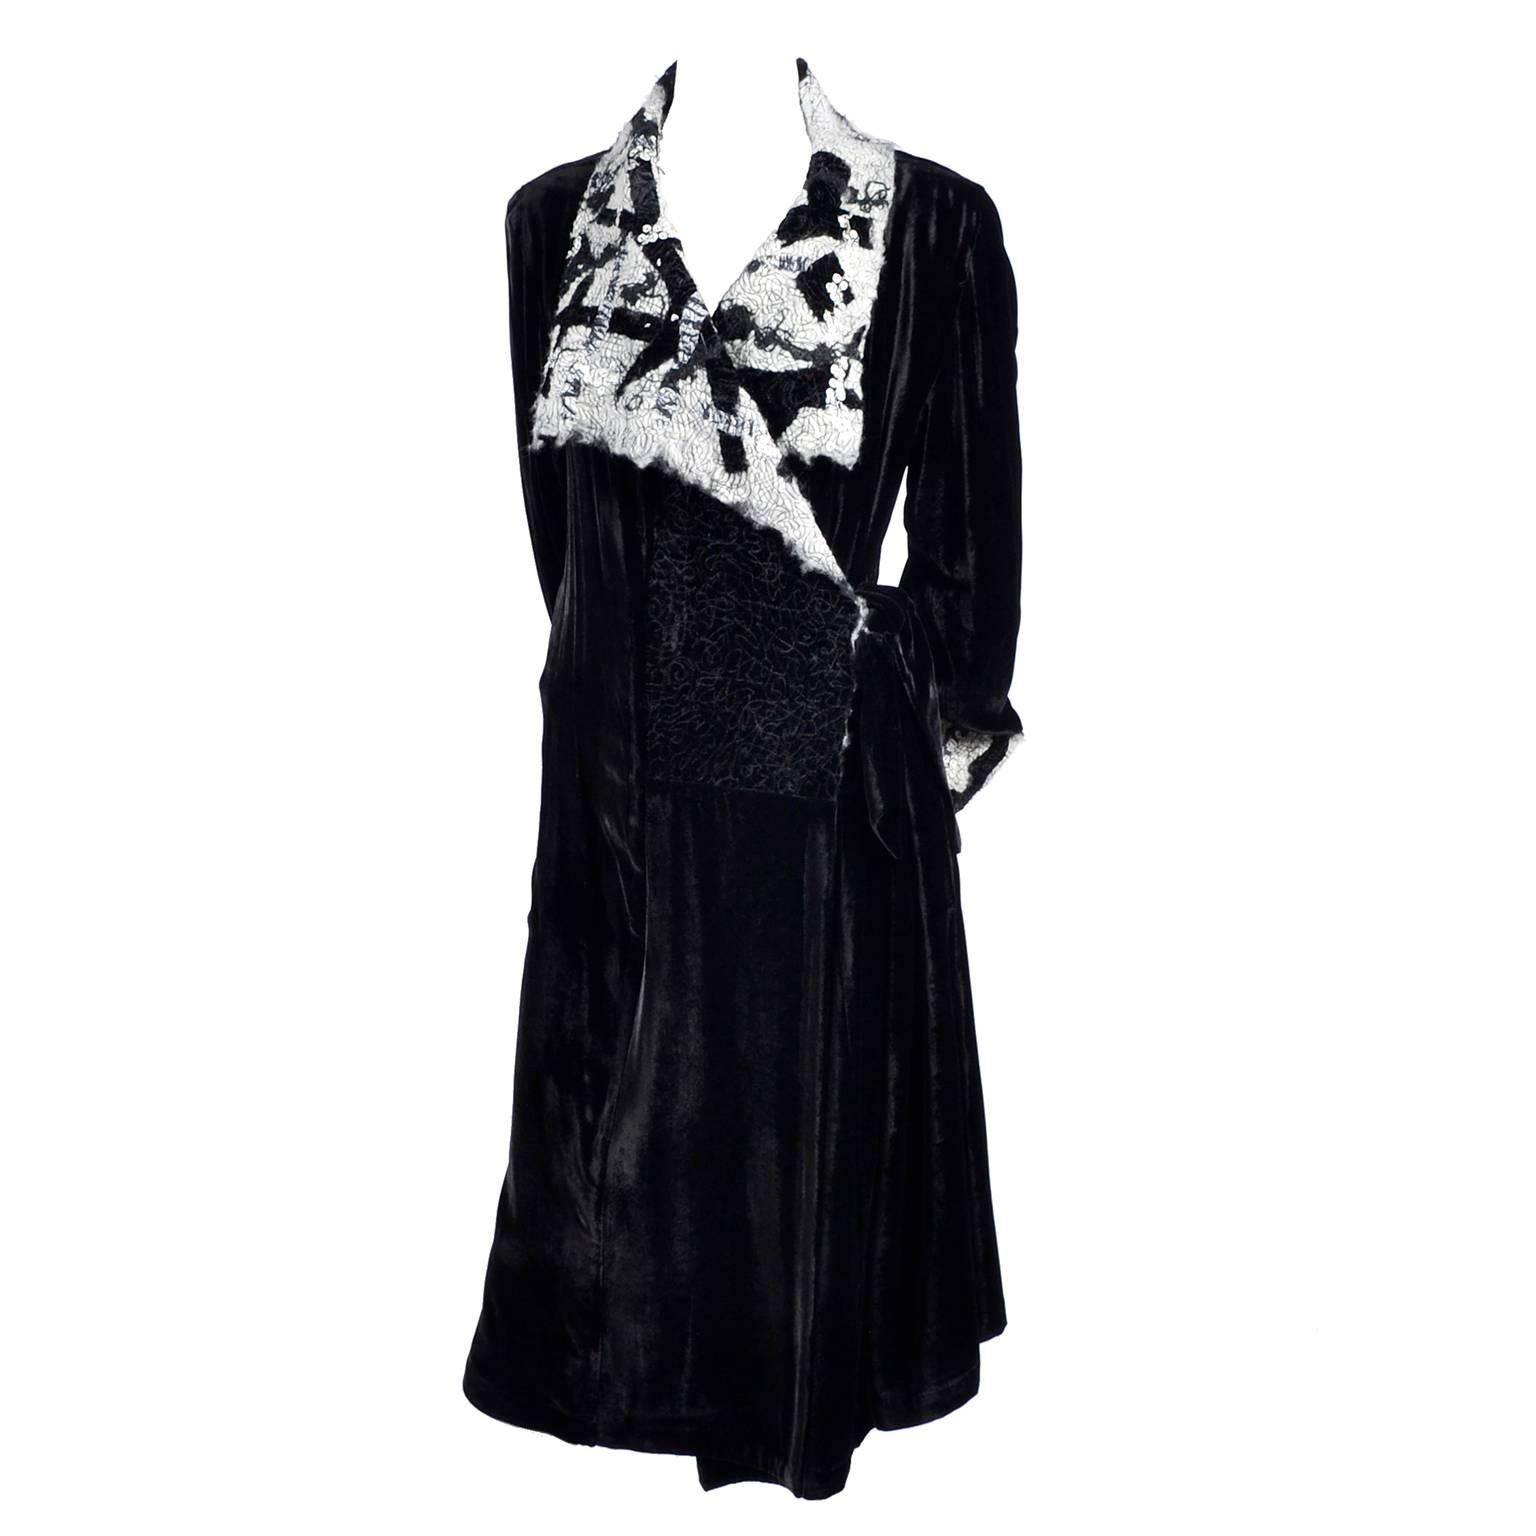 Catherine Bacon Vintage Evening Coat in Black Velvet White Mohair Wool & Sequins